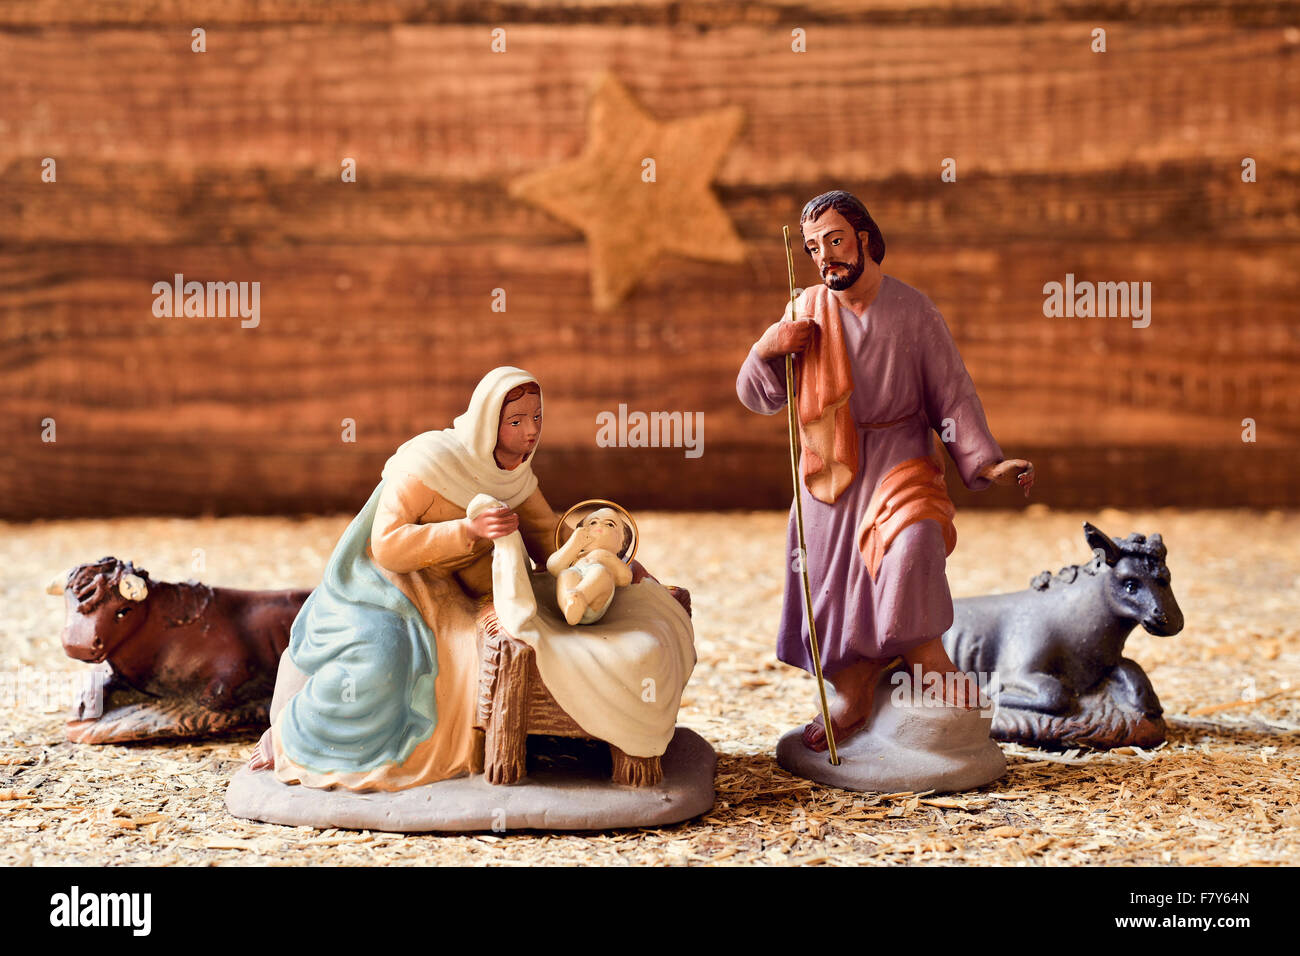 La sainte famille, l'Enfant Jésus, la Vierge Marie et saint Joseph, et l'âne et le bœuf dans un cadre rustique, avec crèche de la s Banque D'Images